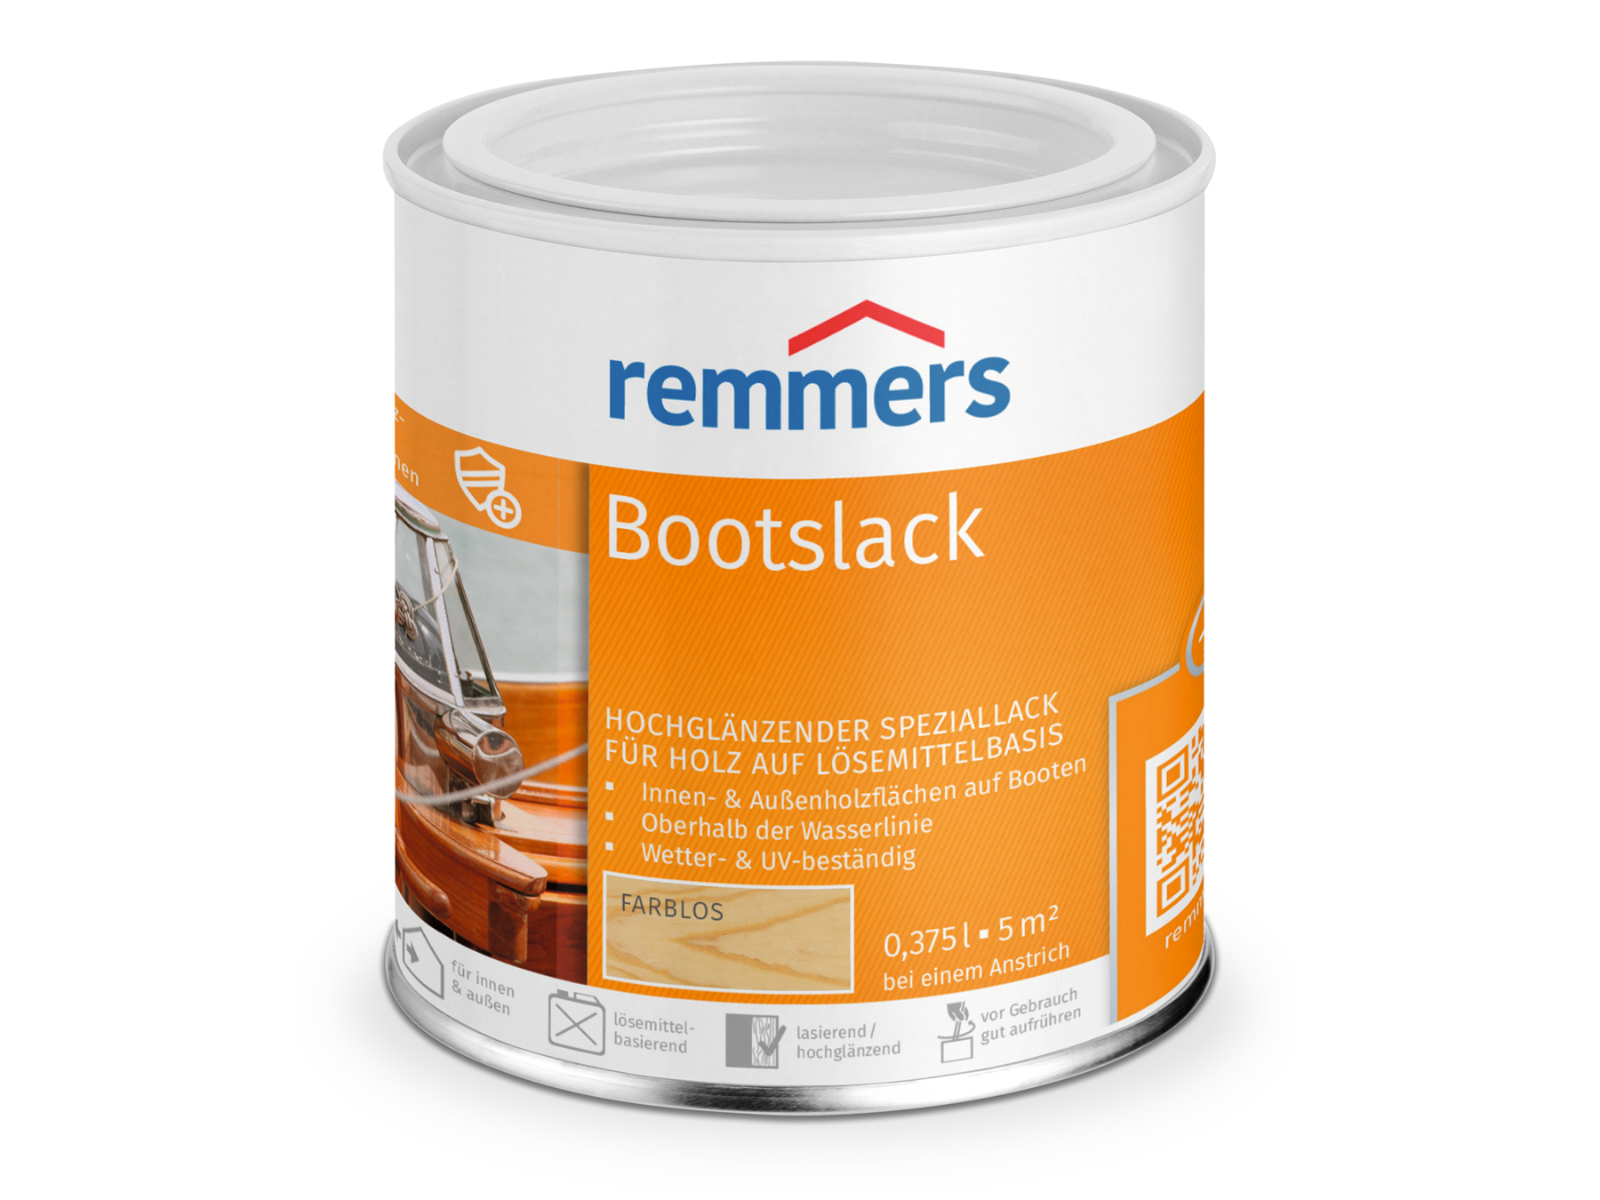 Remmers Bootslack Klarlack Bootsfarbe Farbe 0,375 l 0,75 l 2,5 l Lack Farblos